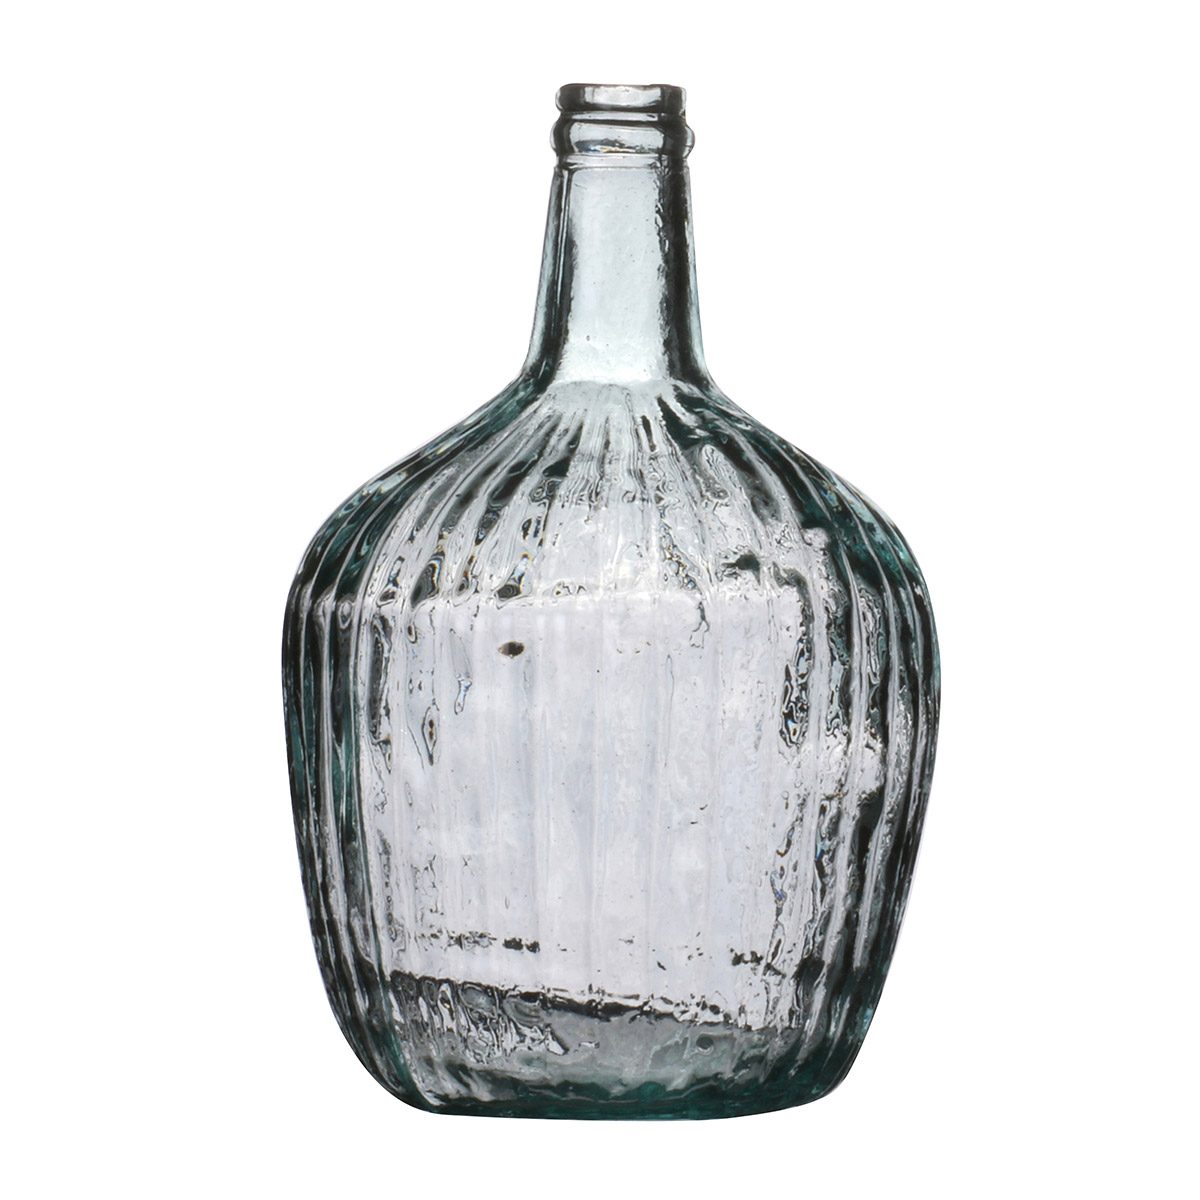 Vase dame jeanne verre recyclé 4l d21